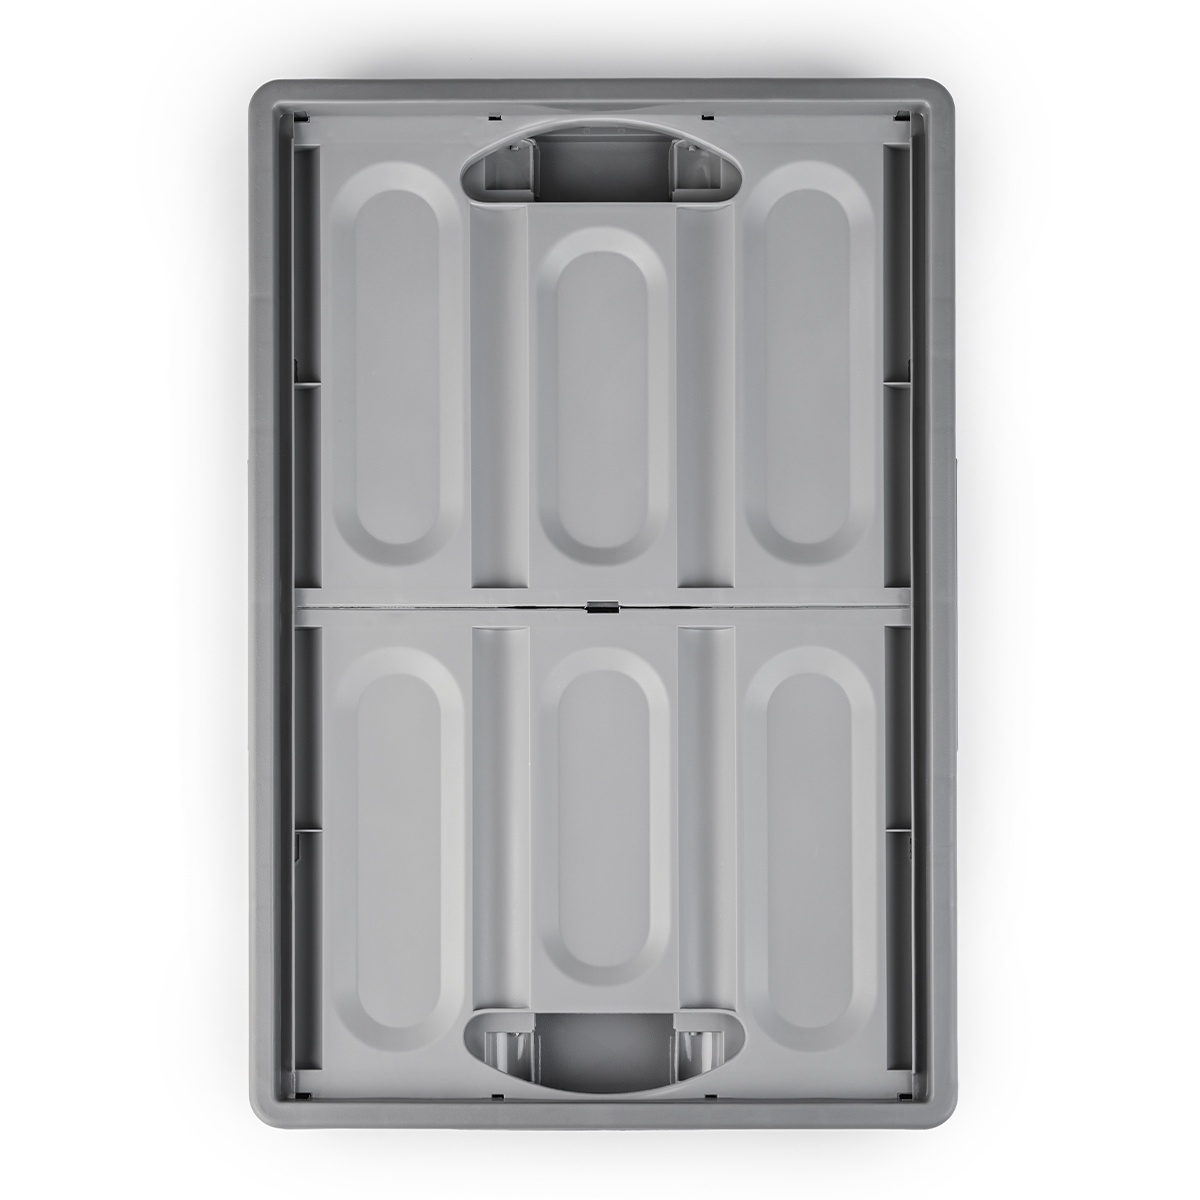 Ящик для зберігання з кришкою MVM пластиковий сірий 290x355x520 FB-1 55L GRAY